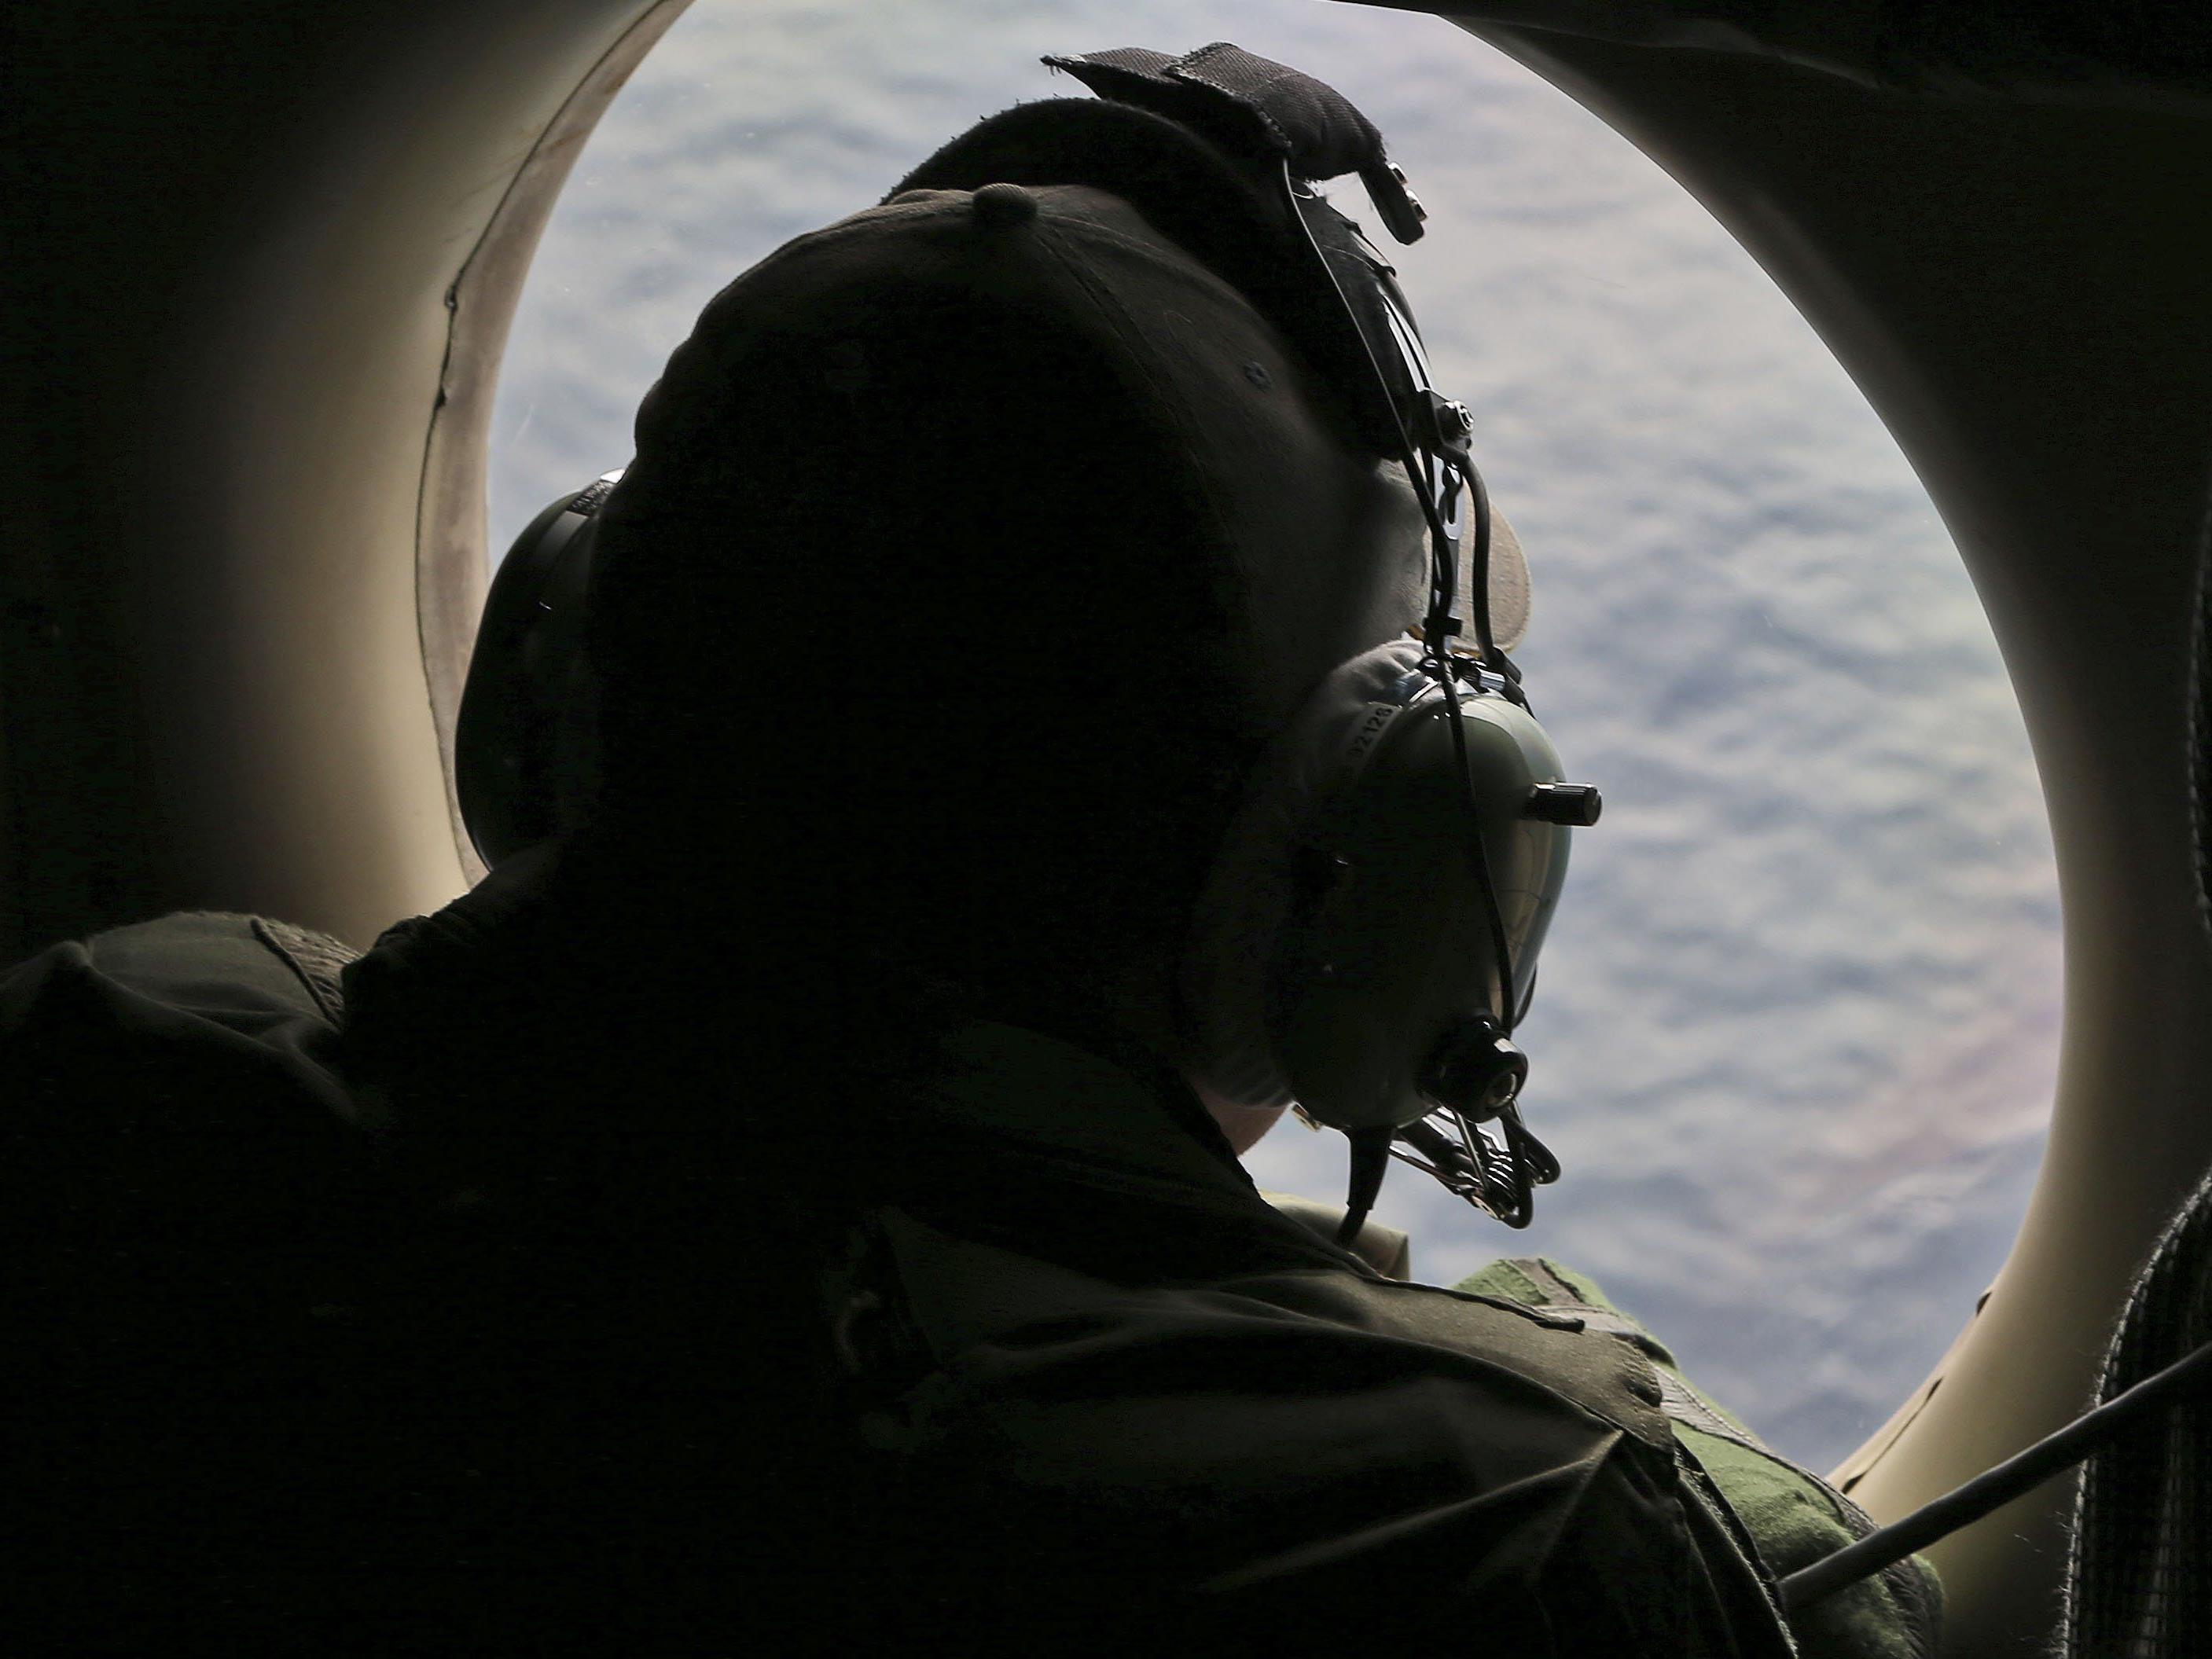 MH370 verschwand vor einem Jahr - was passierte, ist bis heute ungeklärt.